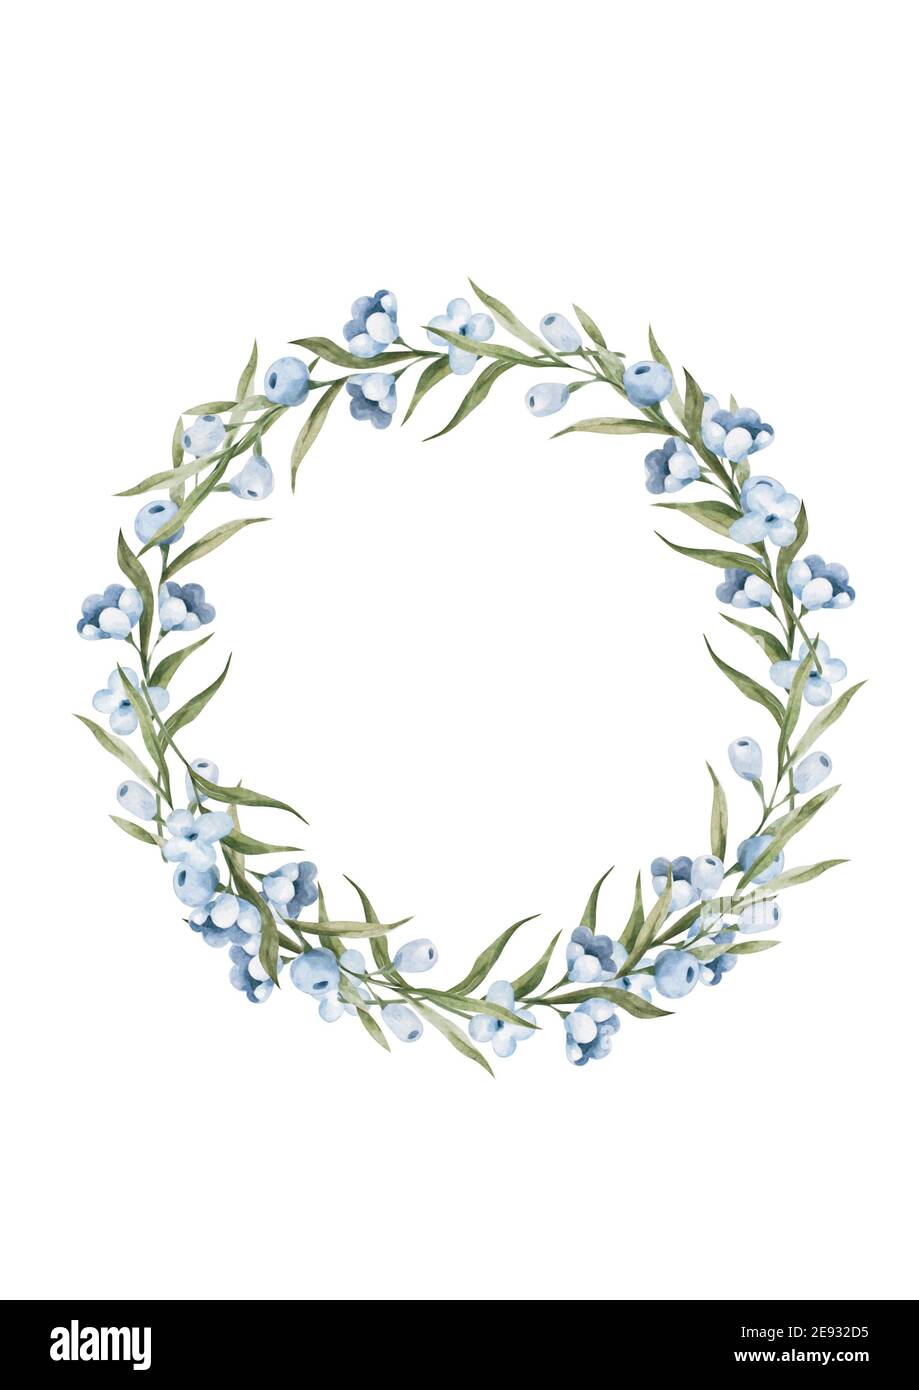 Cornice circolare floreale acquerello con fiori selvatici, dima disegnata a mano. Foglie verdi con l'illustrazione dei fiori blu Foto Stock